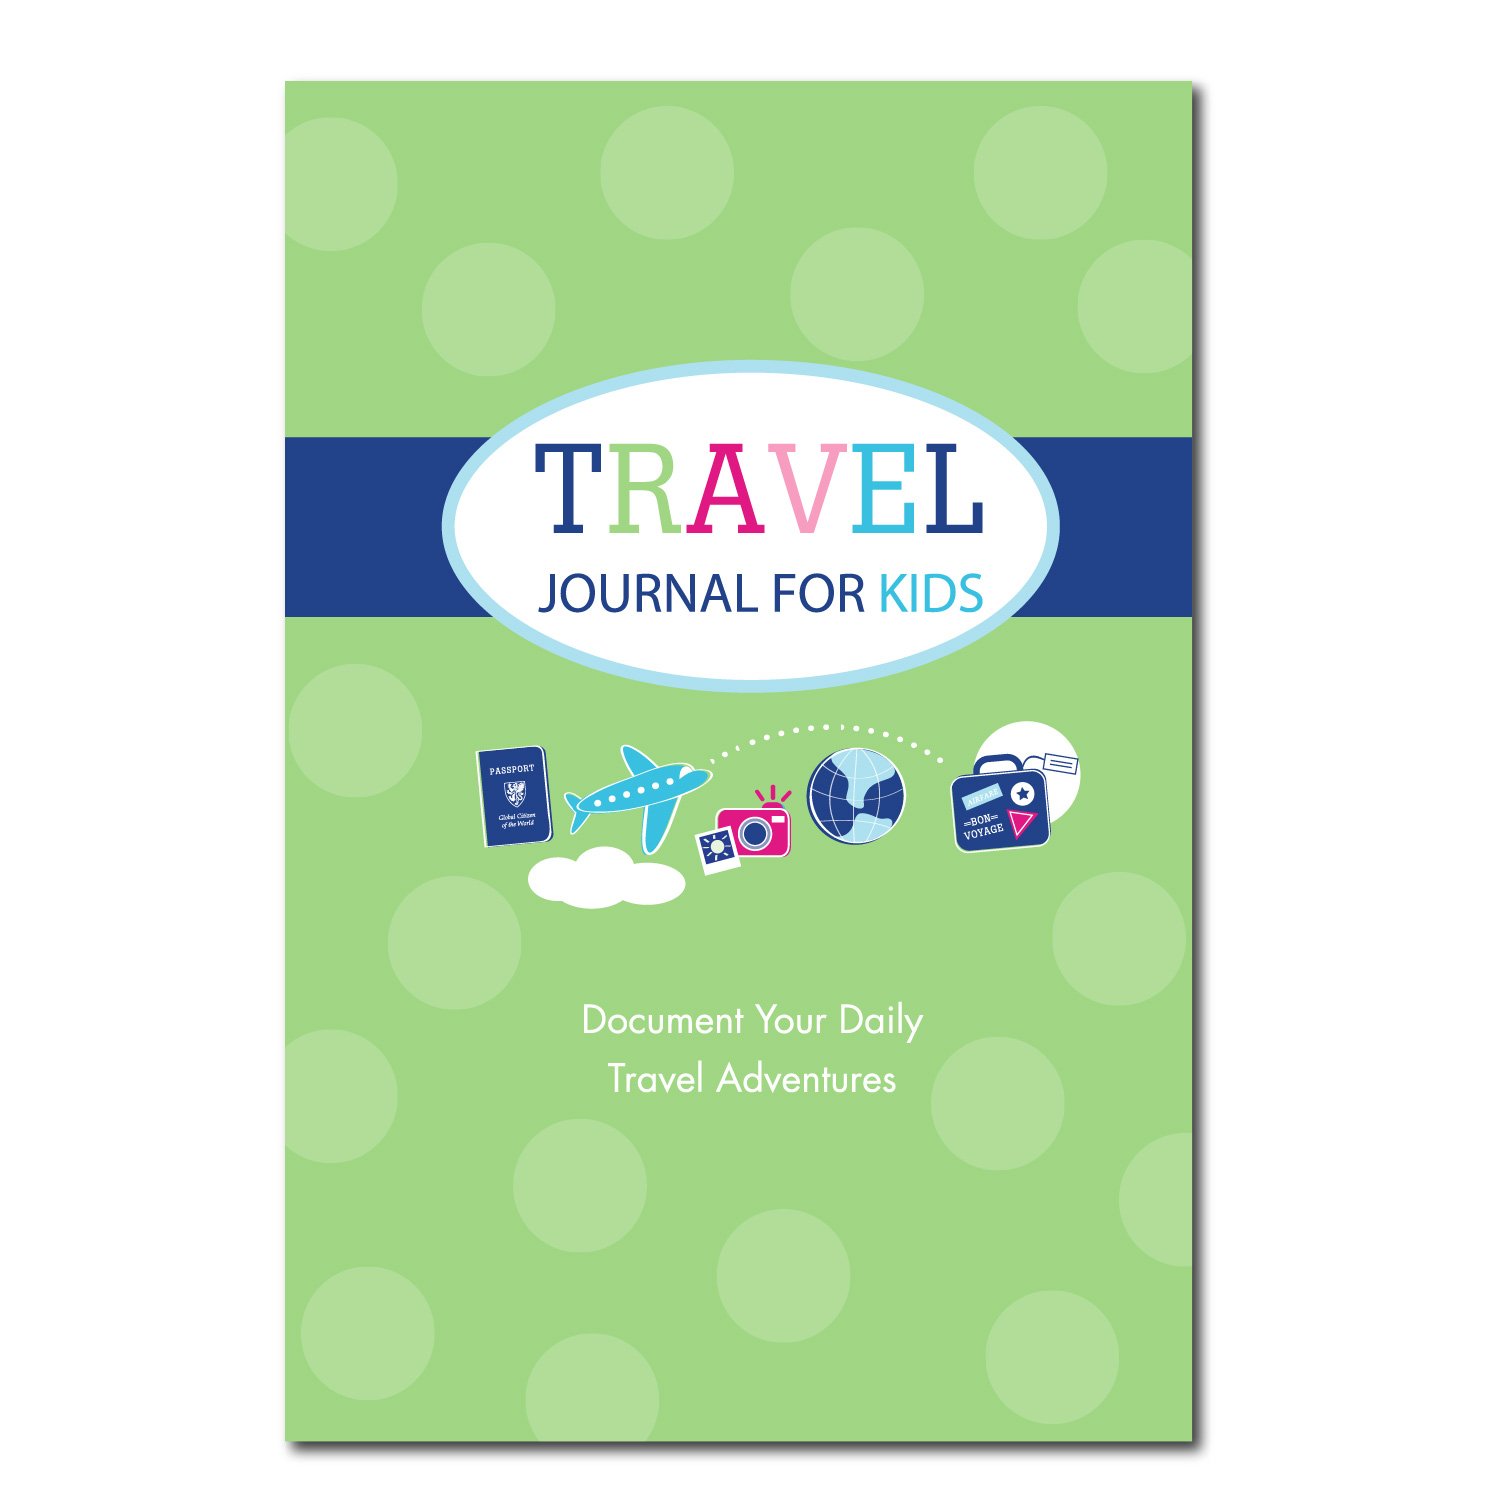 Travel Journal for Kids (Green)